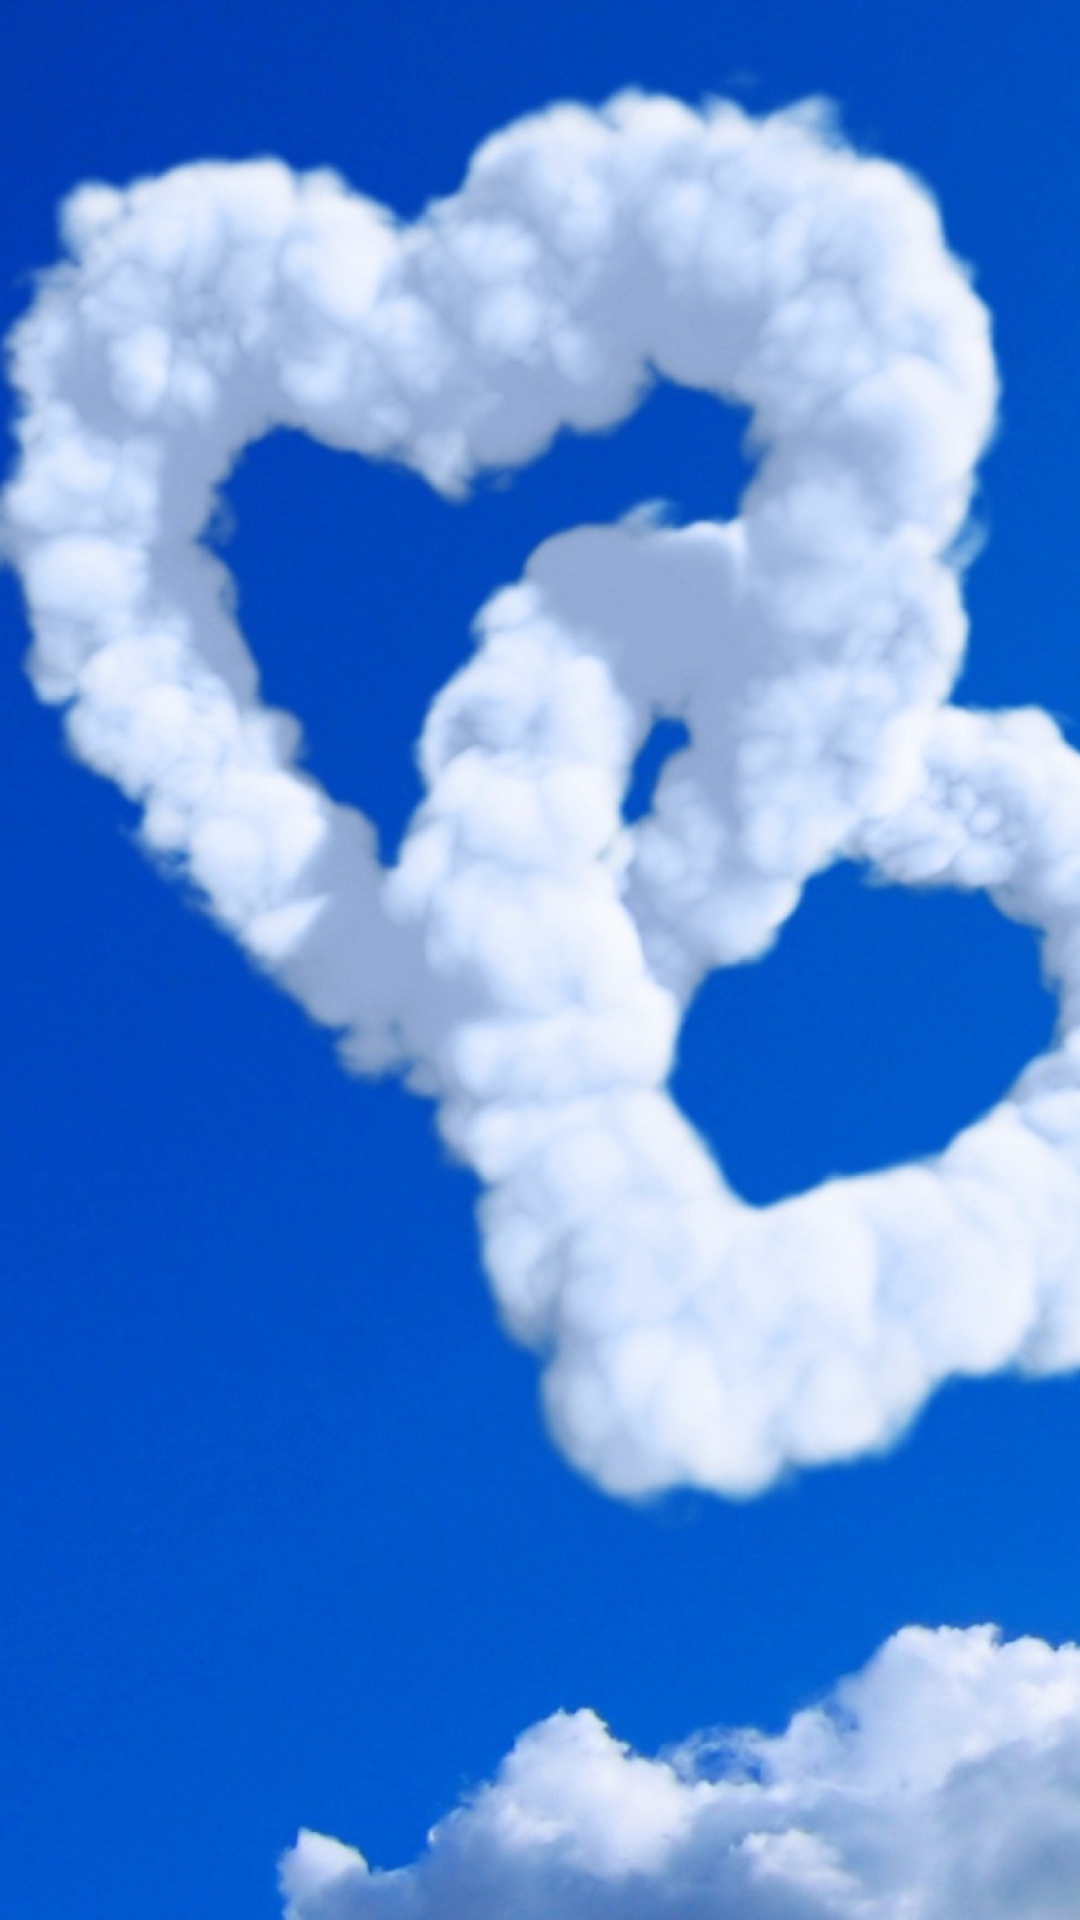 Heart Shaped Clouds screenshot #1 1080x1920